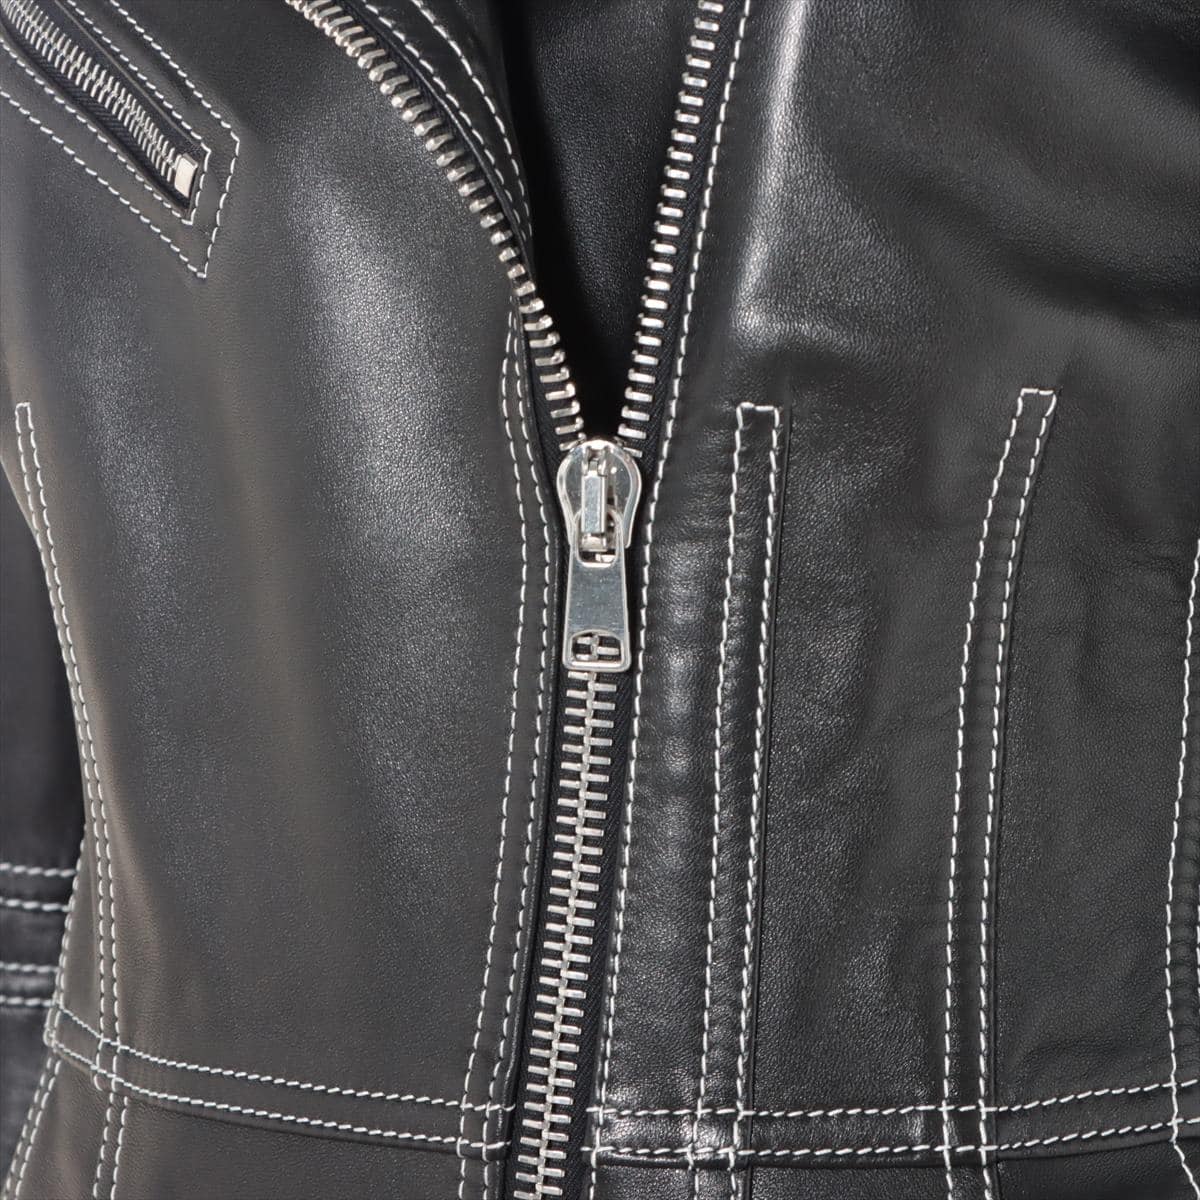 Alexander McQueen Lambskin Leather jacket 40 Ladies' Black  650211